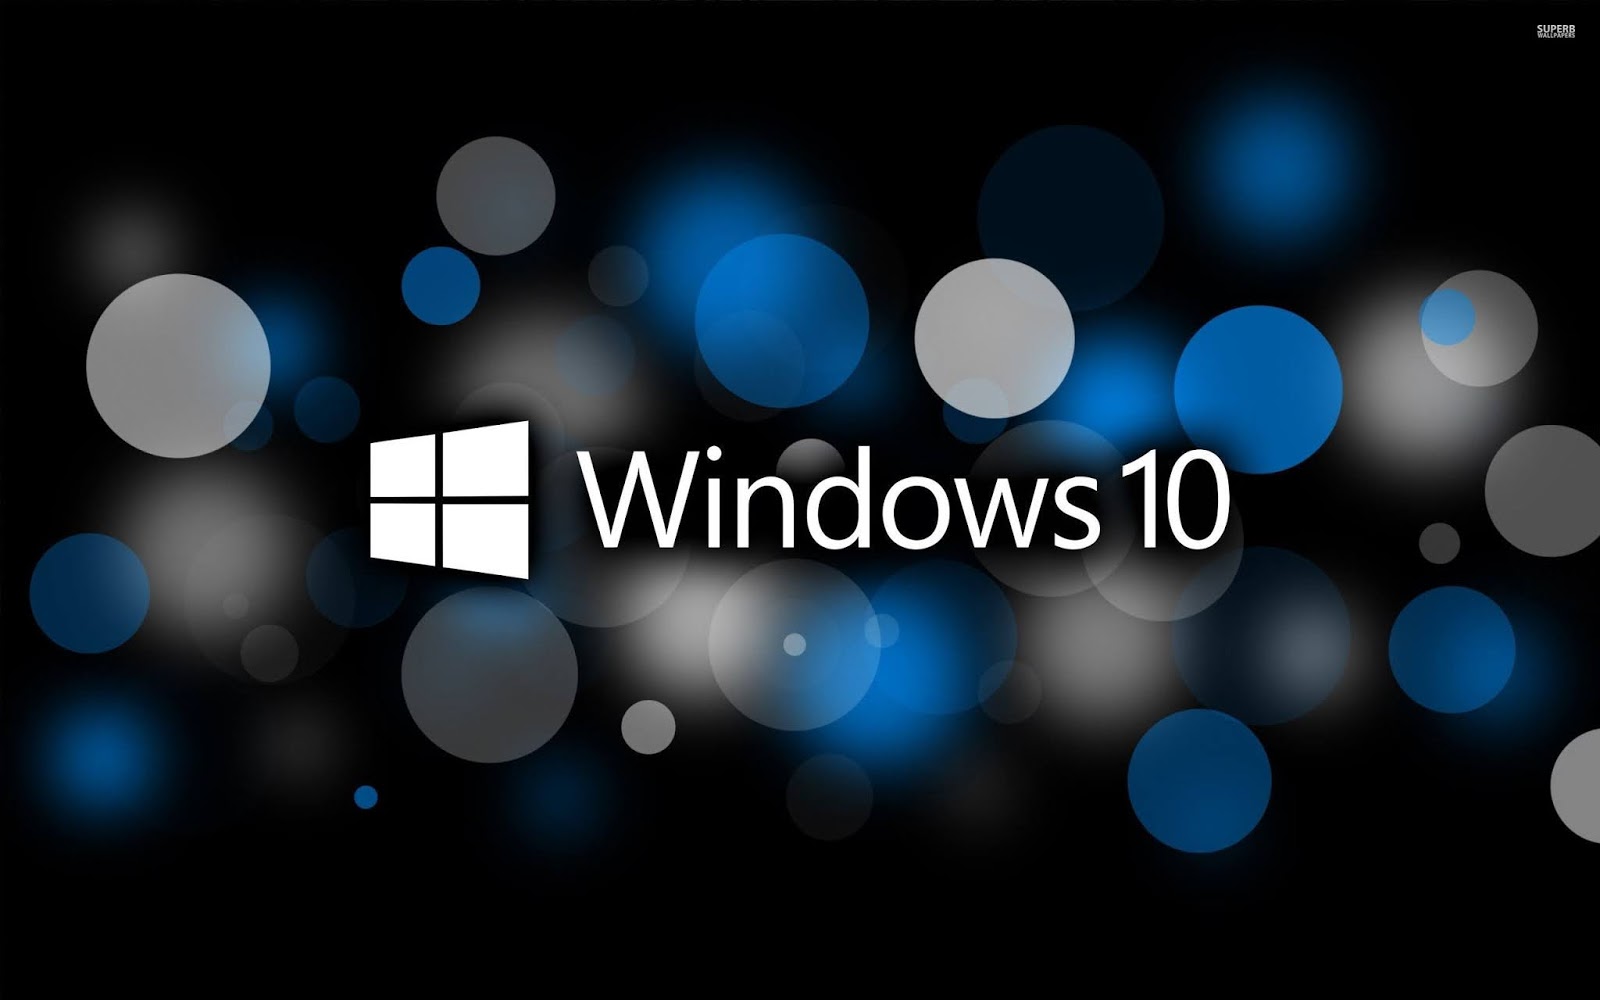 download windows 10 iso 64 bit link